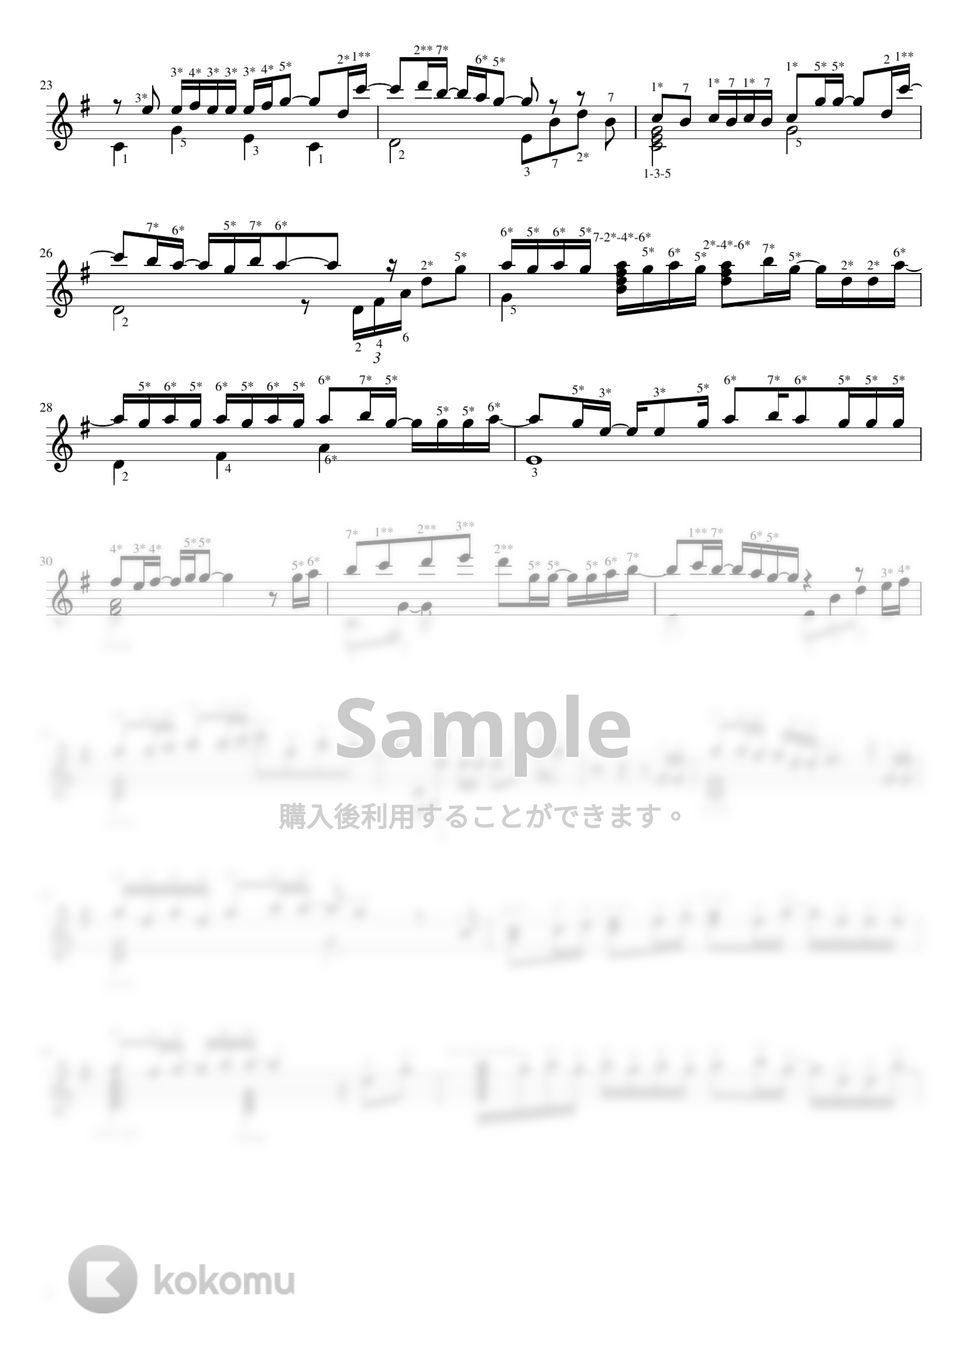 back number - クリスマスソング (数字ver) by Misa